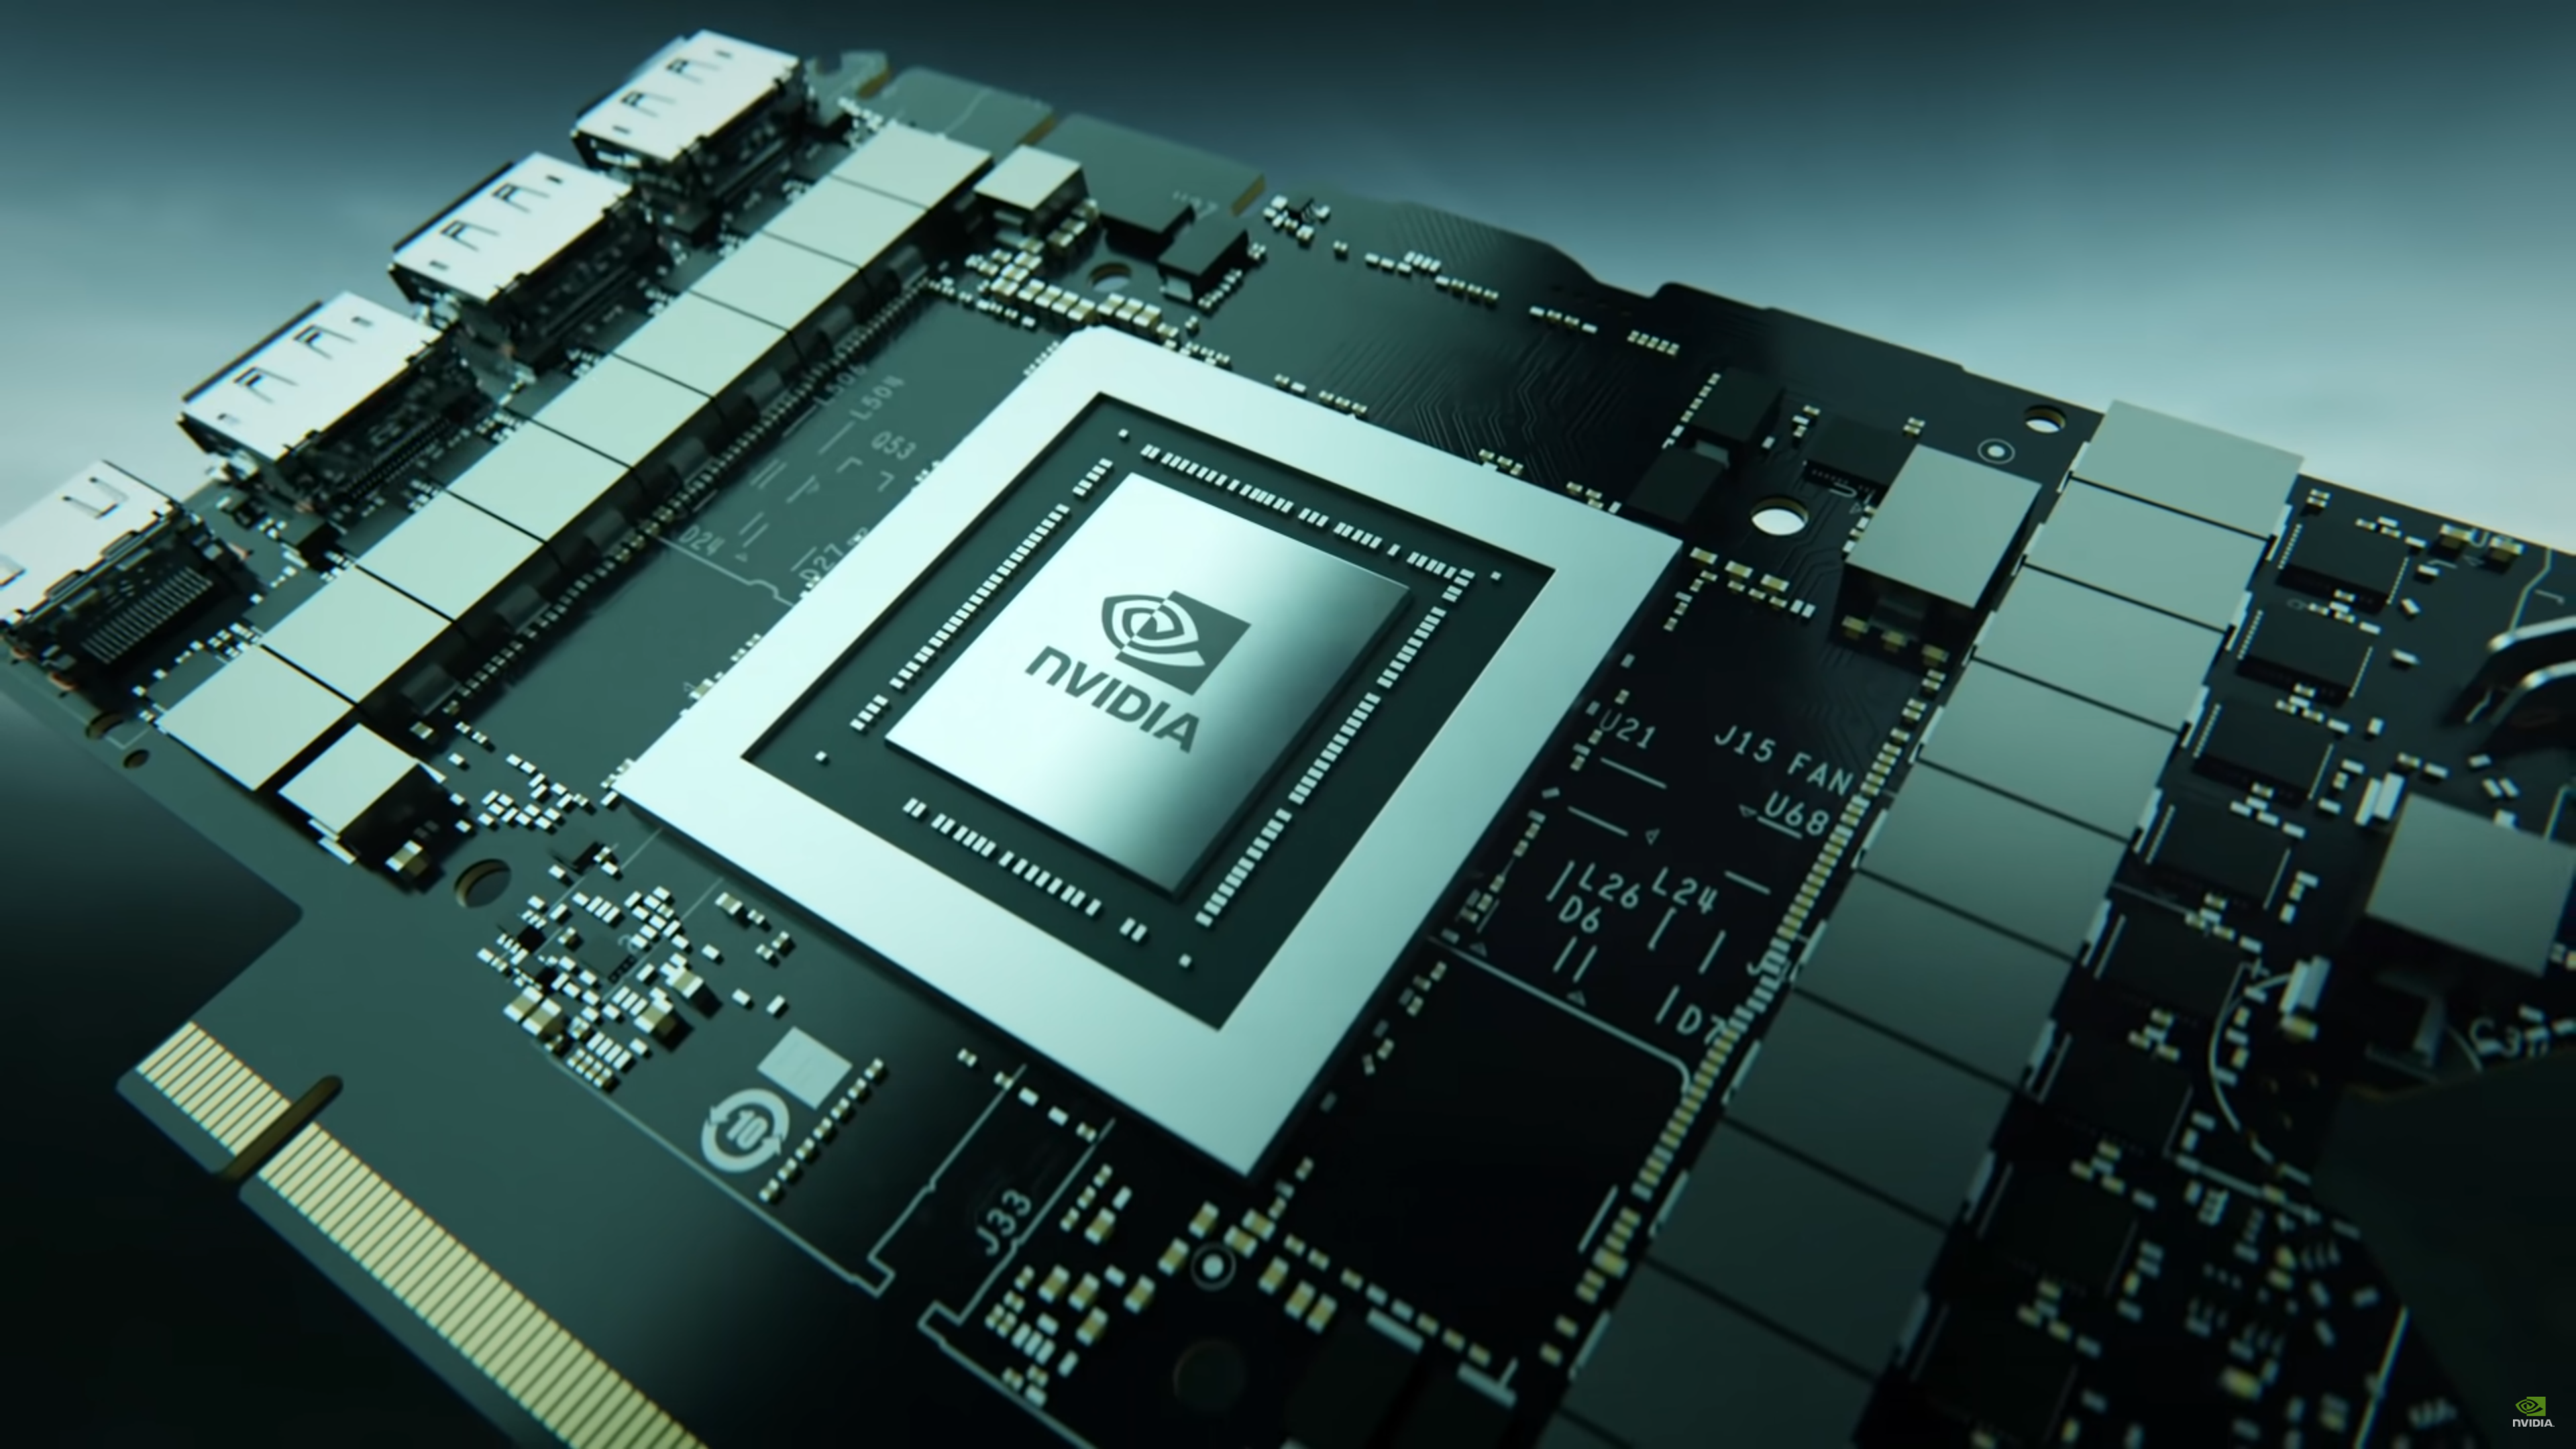 Nvidia GT610M 显卡：性能瓶颈解析与游戏体验挑战  第6张